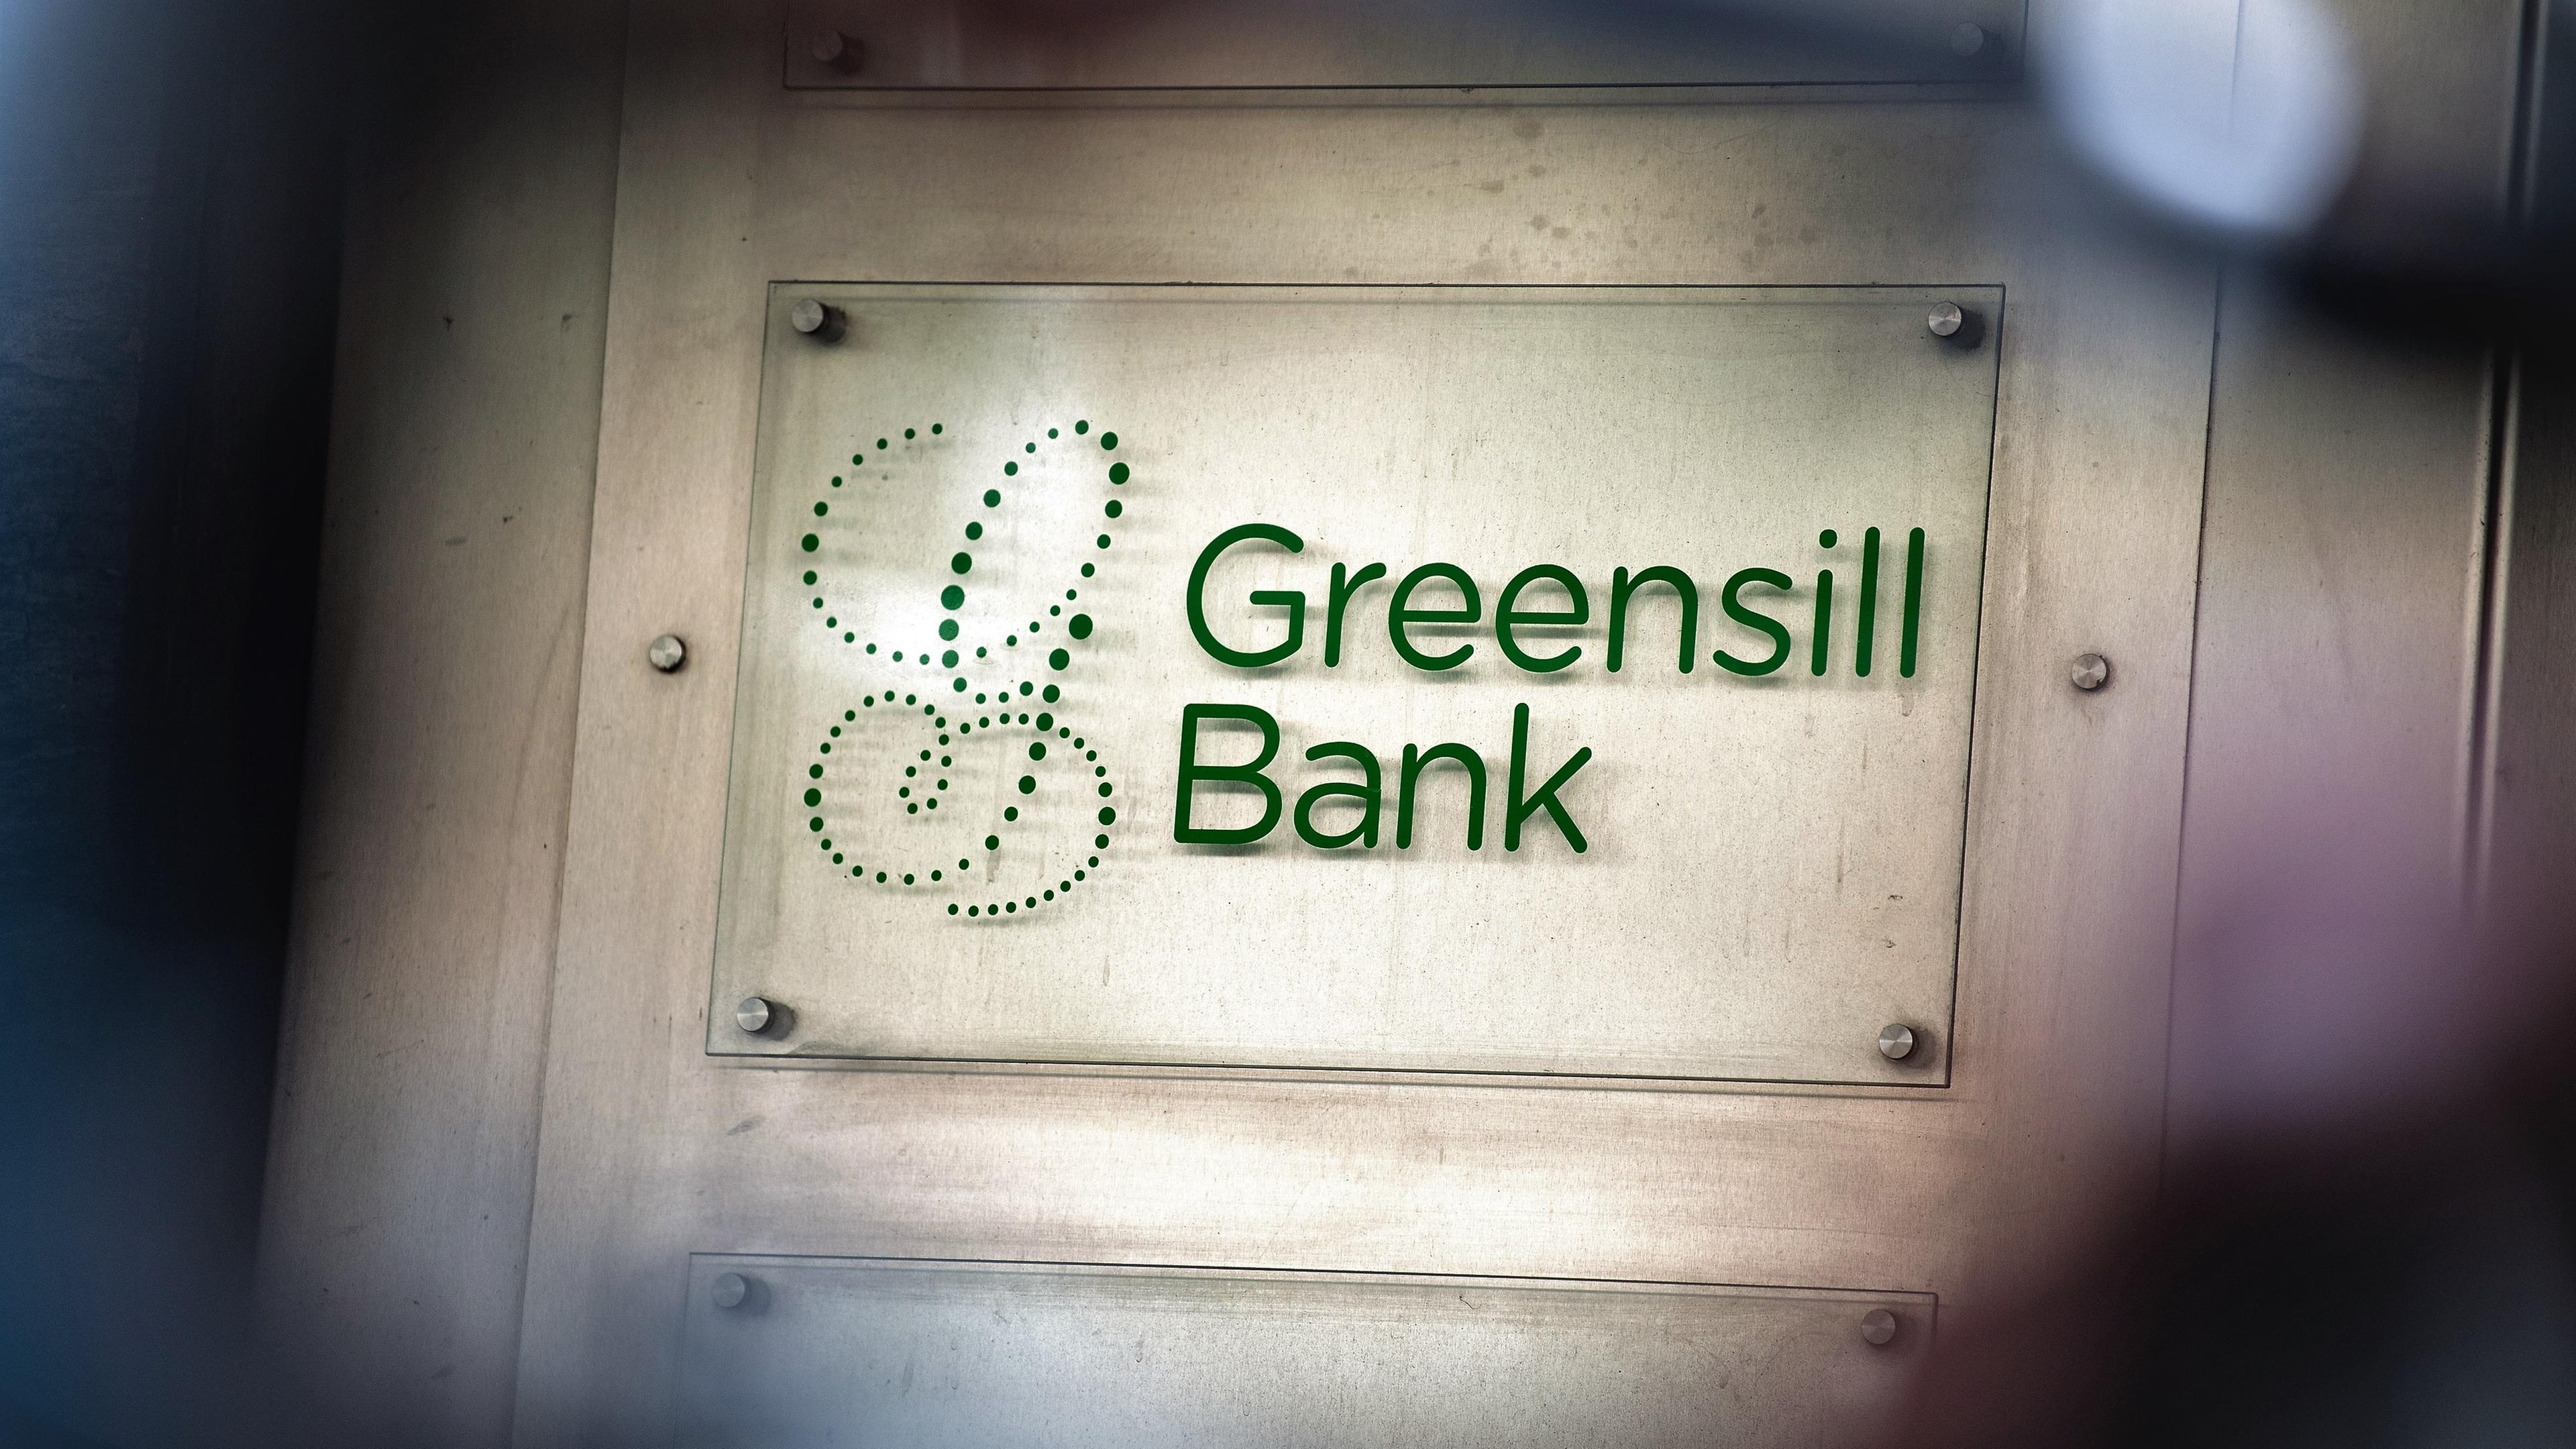 Nahaufnahme Firmenschild "Greensill Bank"